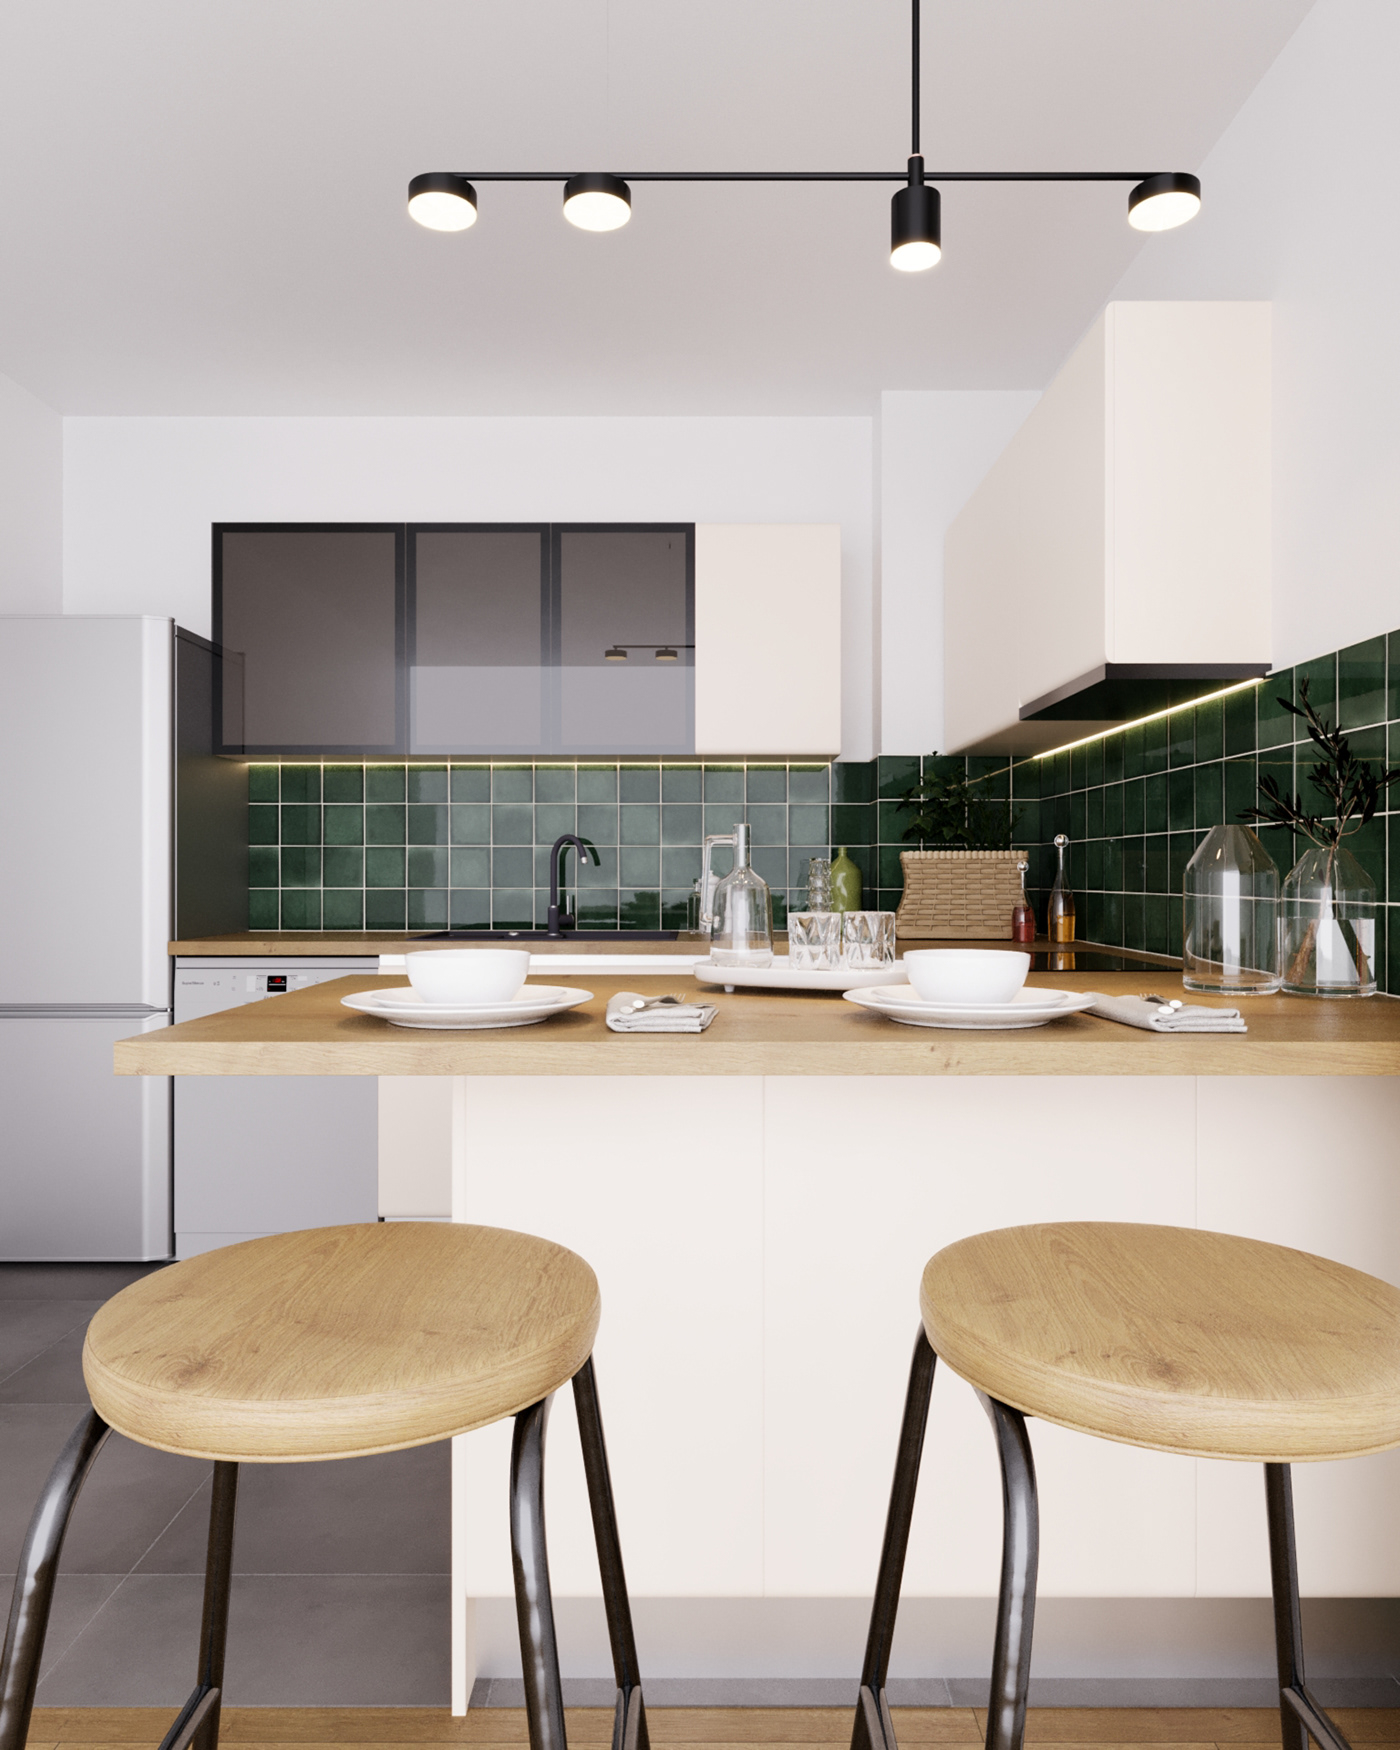 kitchen design Interior visualization 3ds max Render corona archviz CGI modern interior design 